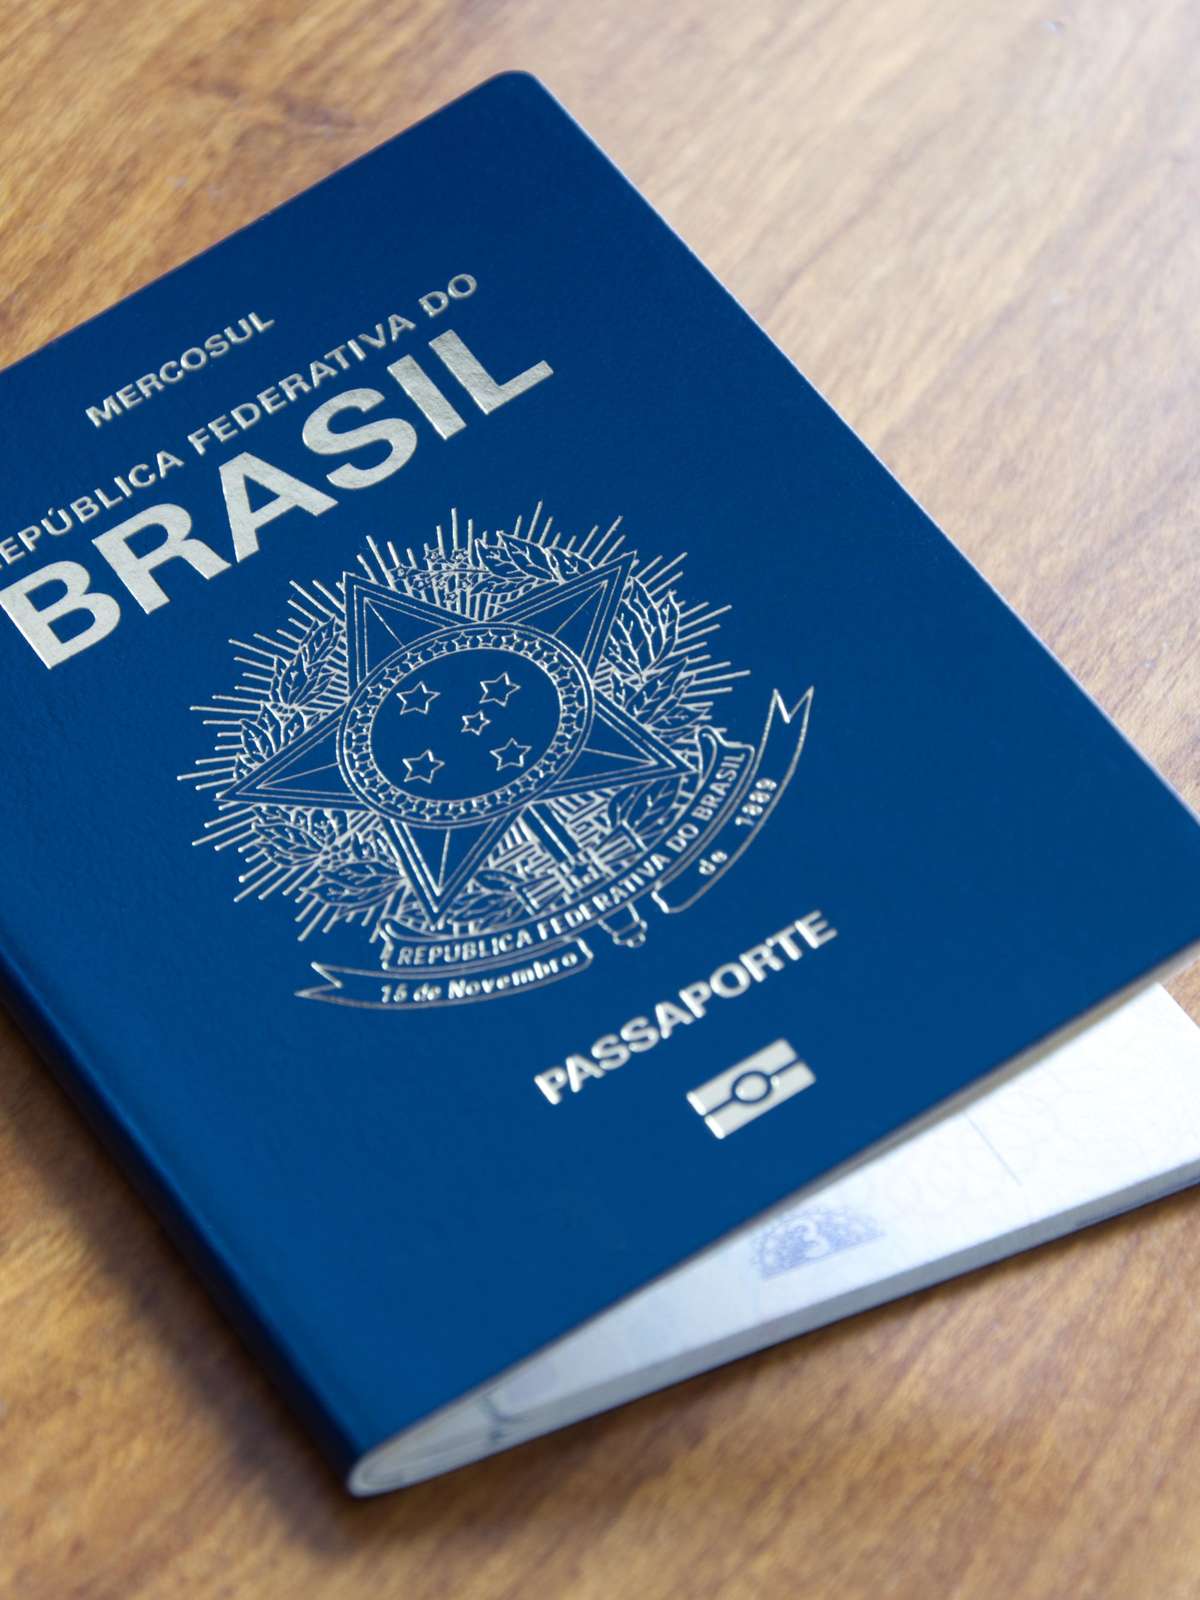 hardMOB - Lançado site do WOW Brasil + Passaporte Anual com